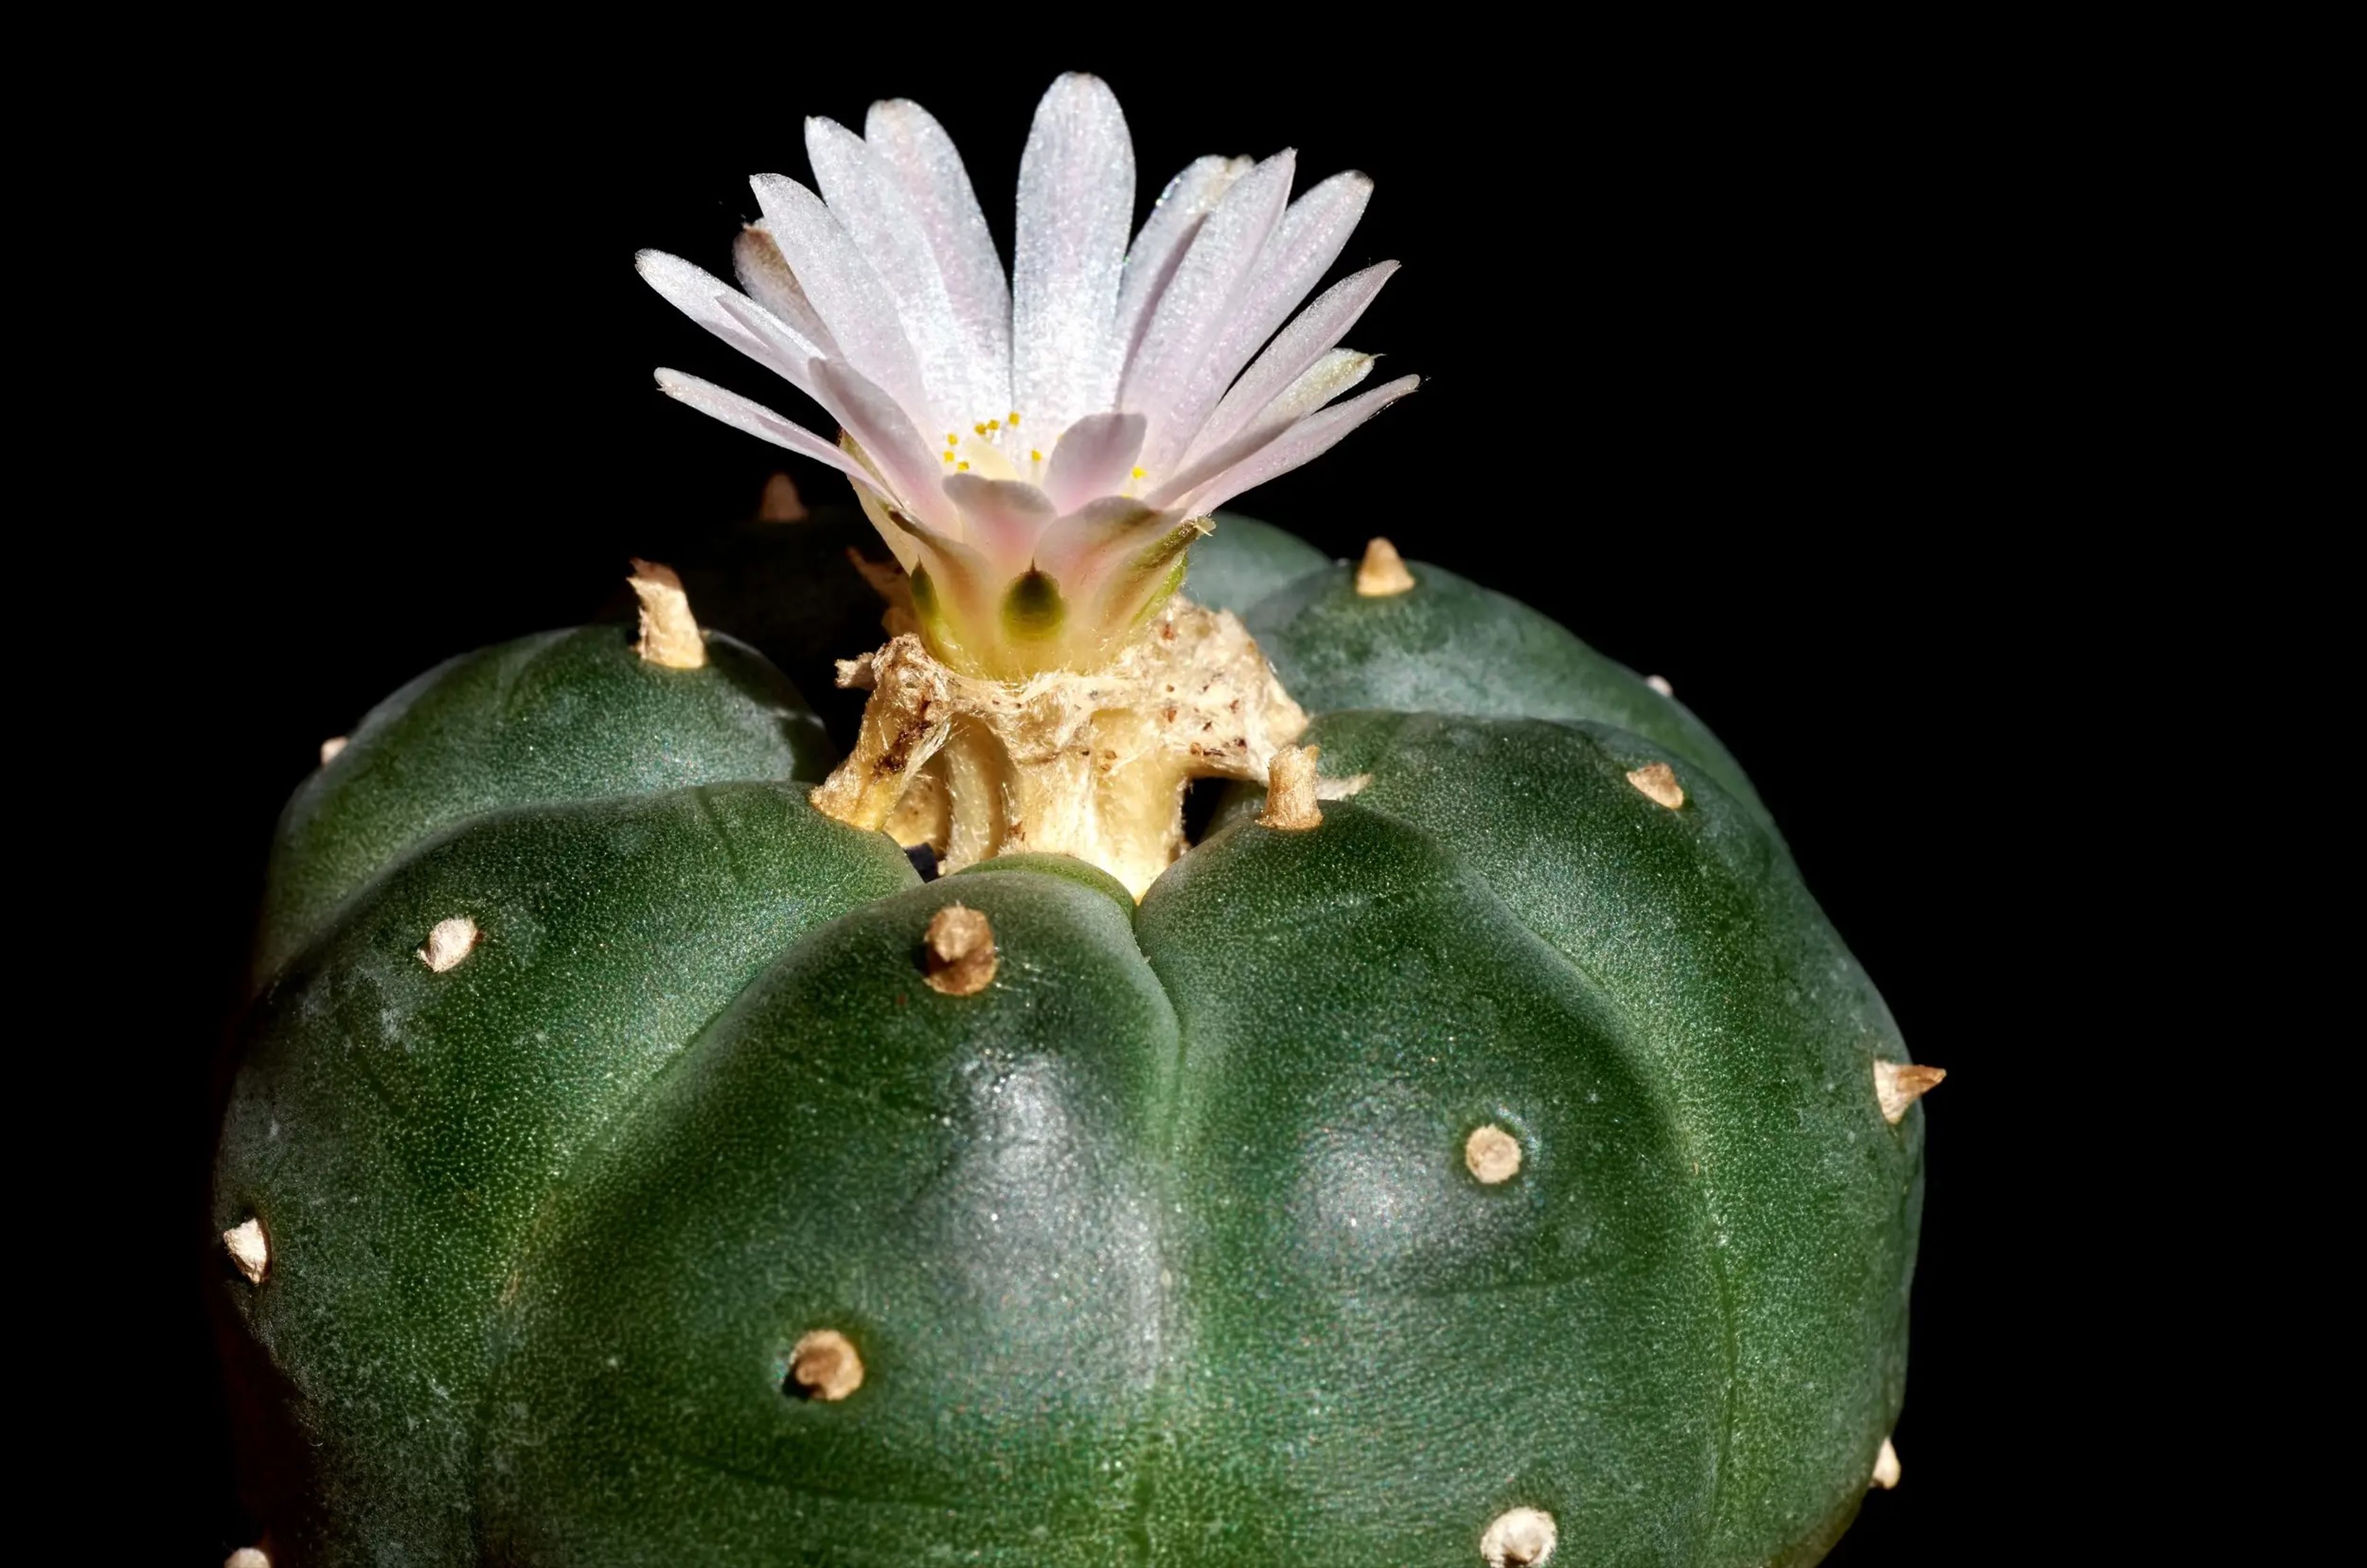 El peyote es un pequeño cactus que contiene un psicodélico natural llamado mescalina. Los grupos indígenas lo han utilizado como sacramento religioso durante miles de años.